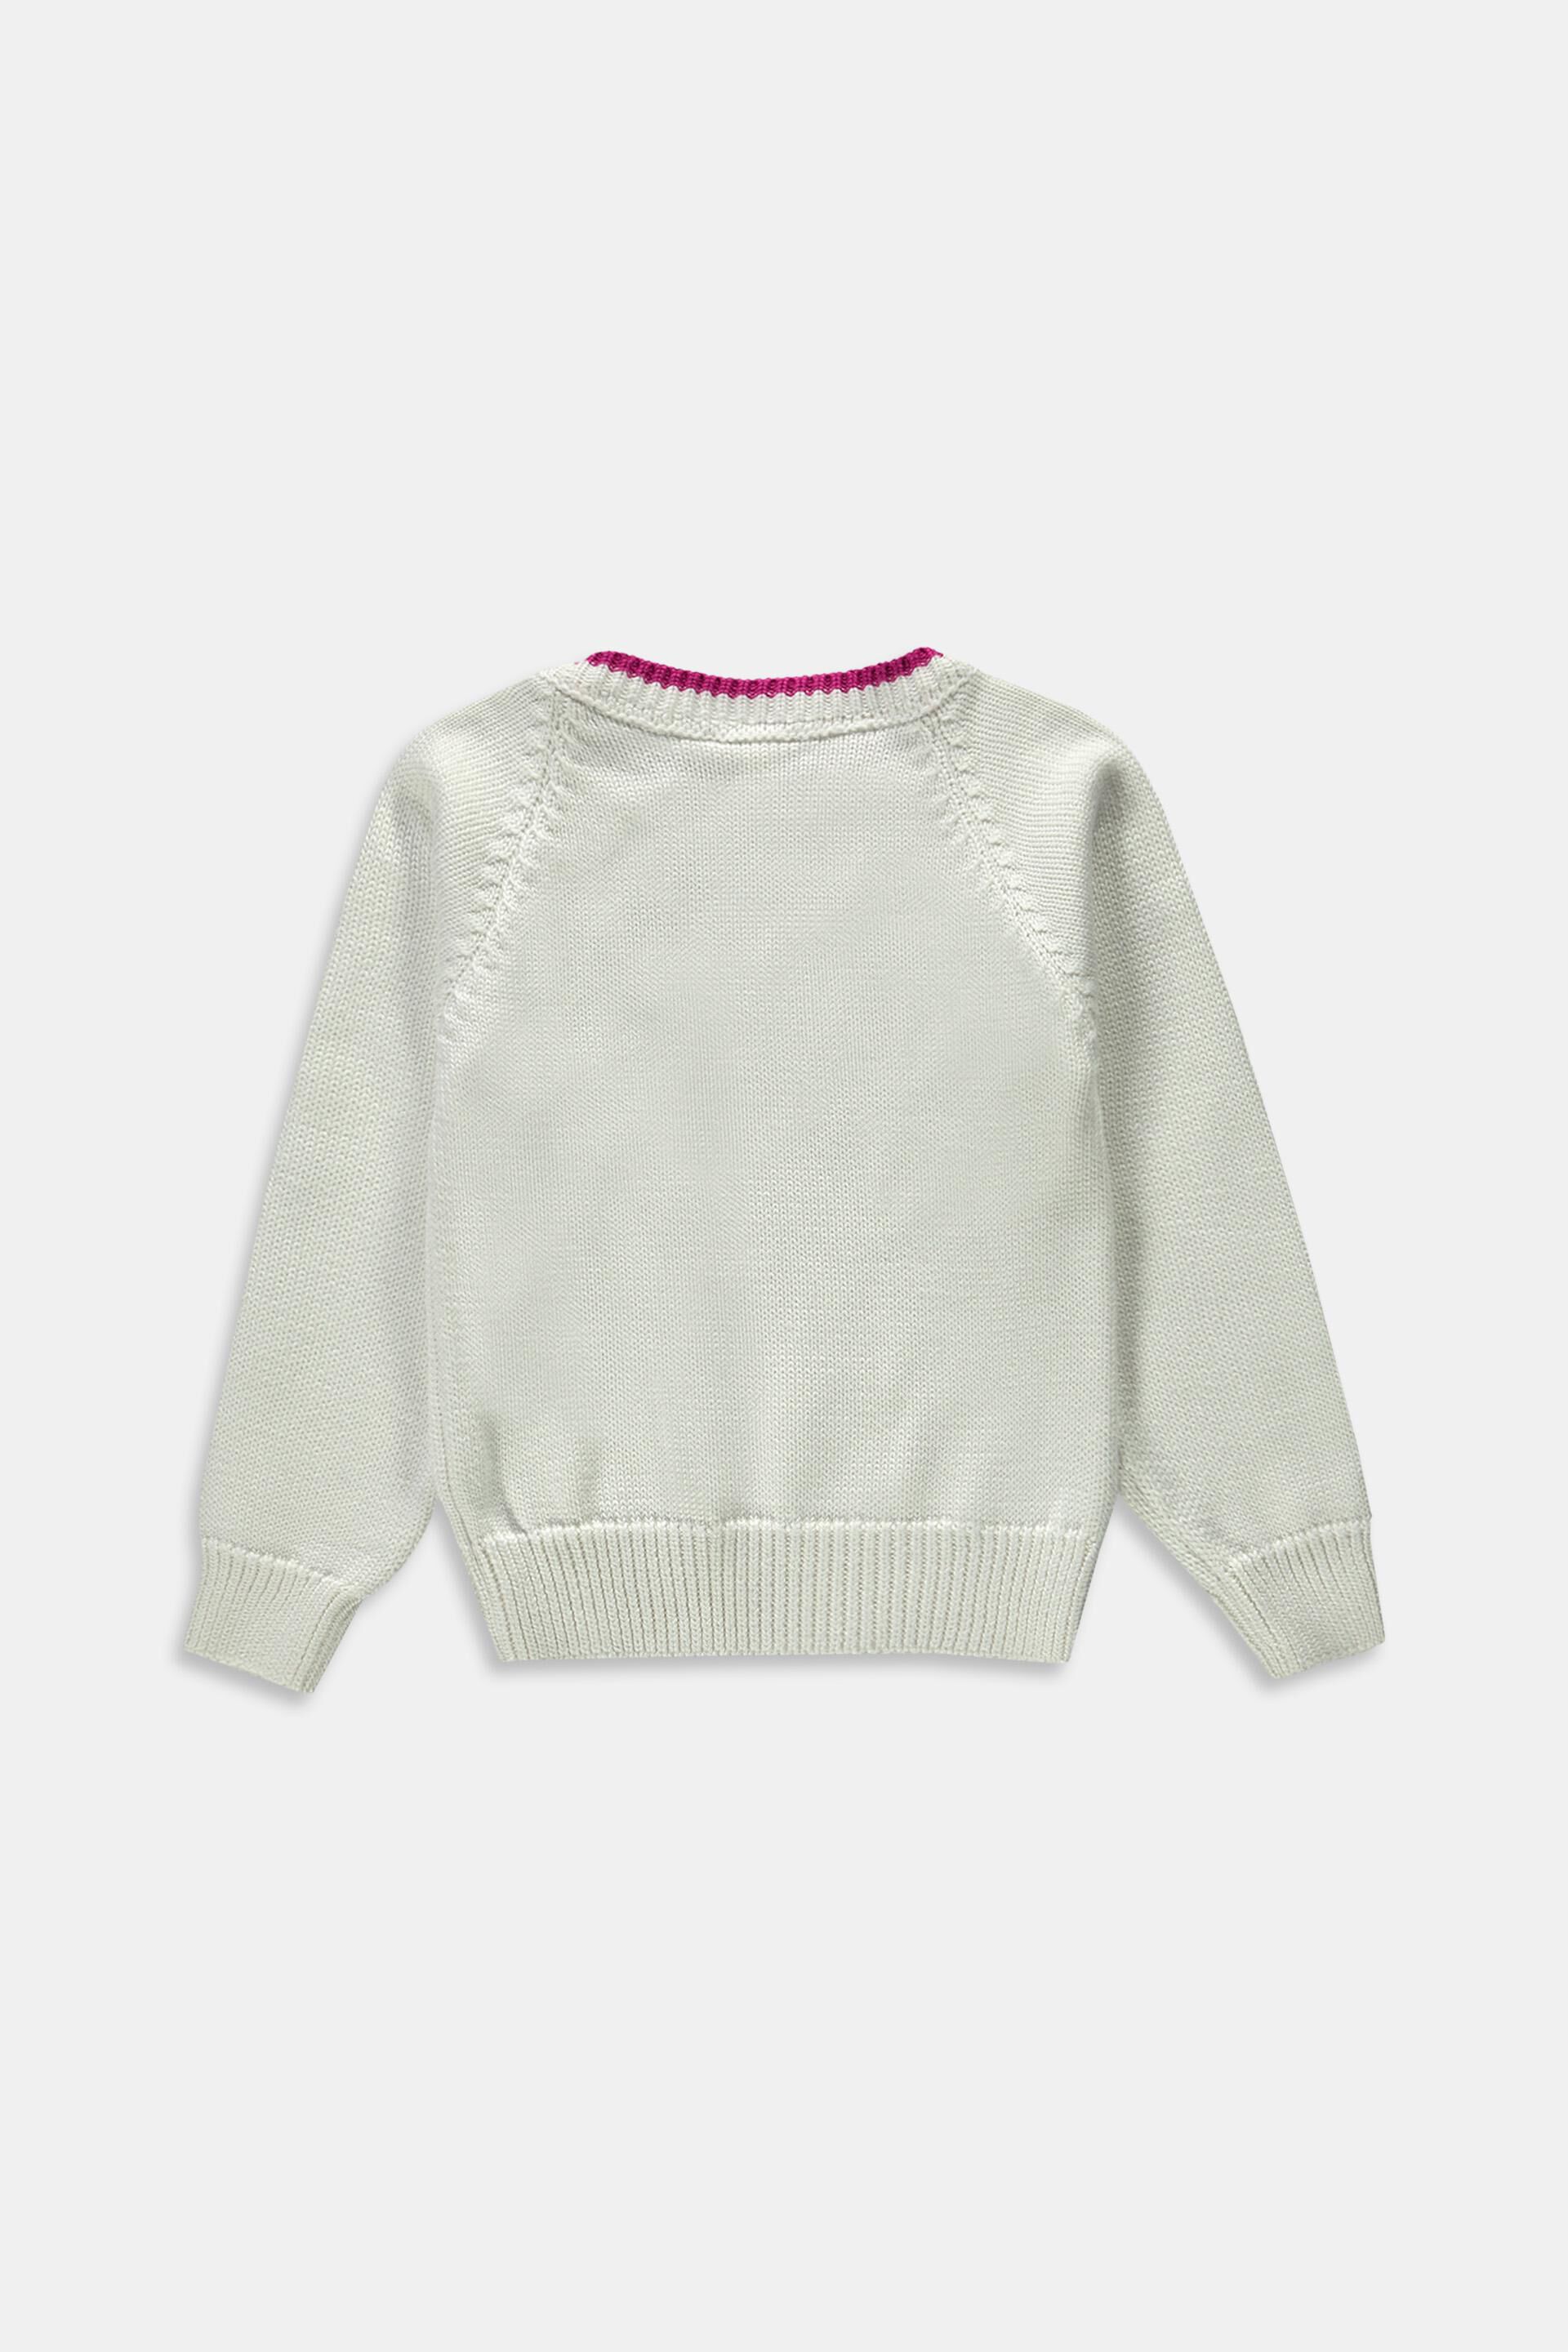 Mädchen Bekleidung Pullover & Strickjacken Pullover DE 92 elkline Mädchen Pullover Gr 